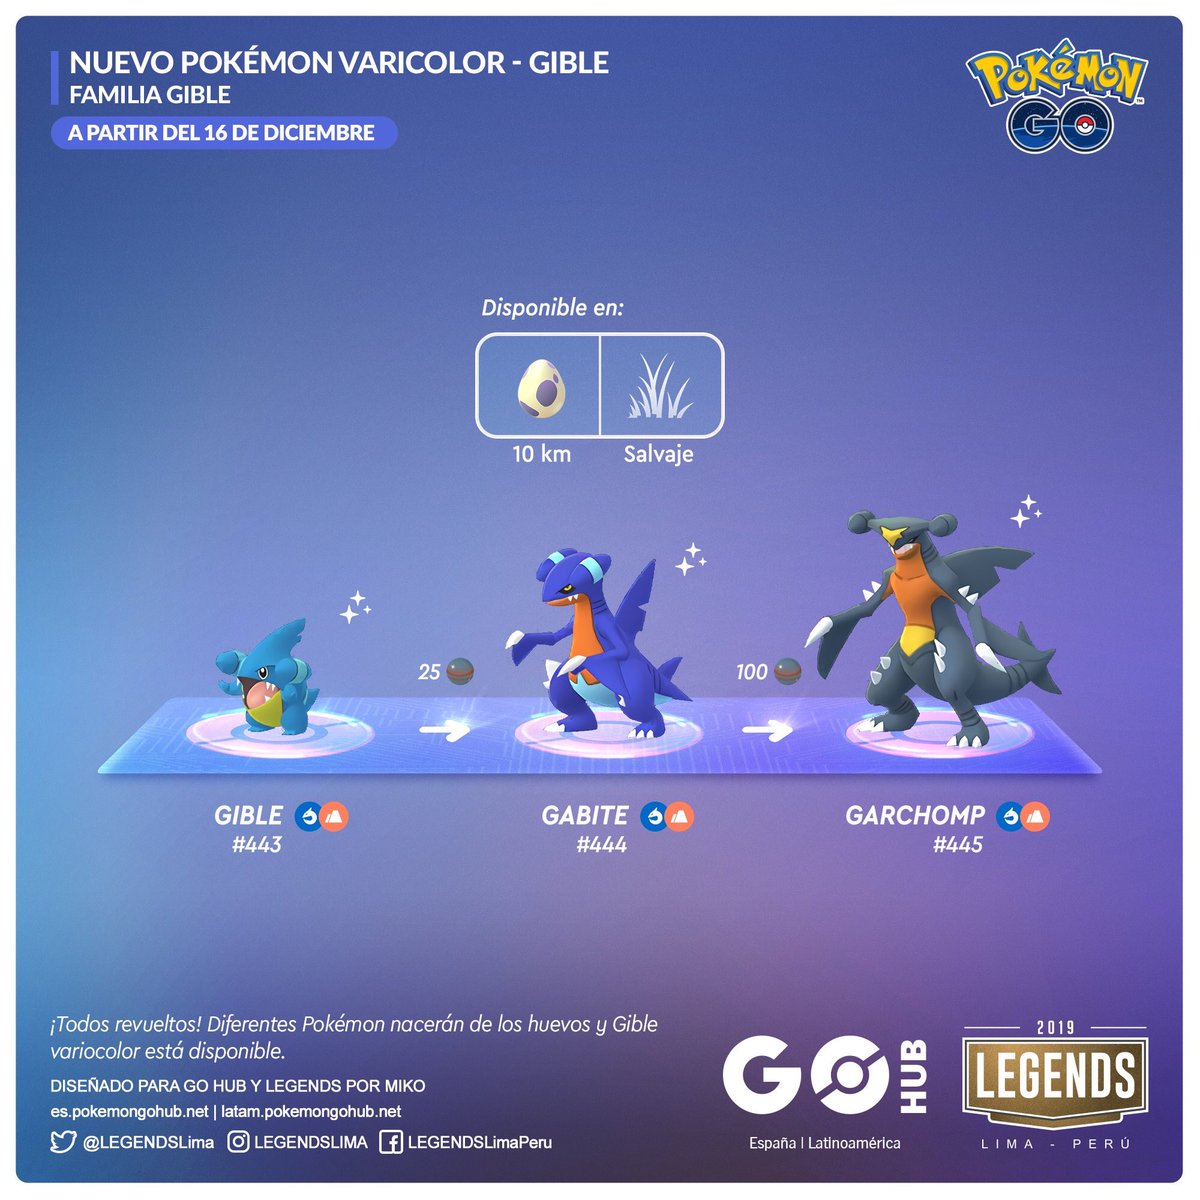 Gible variocolor ya se encuentra disponible en Pokémon GO! pic.twitter.com/...